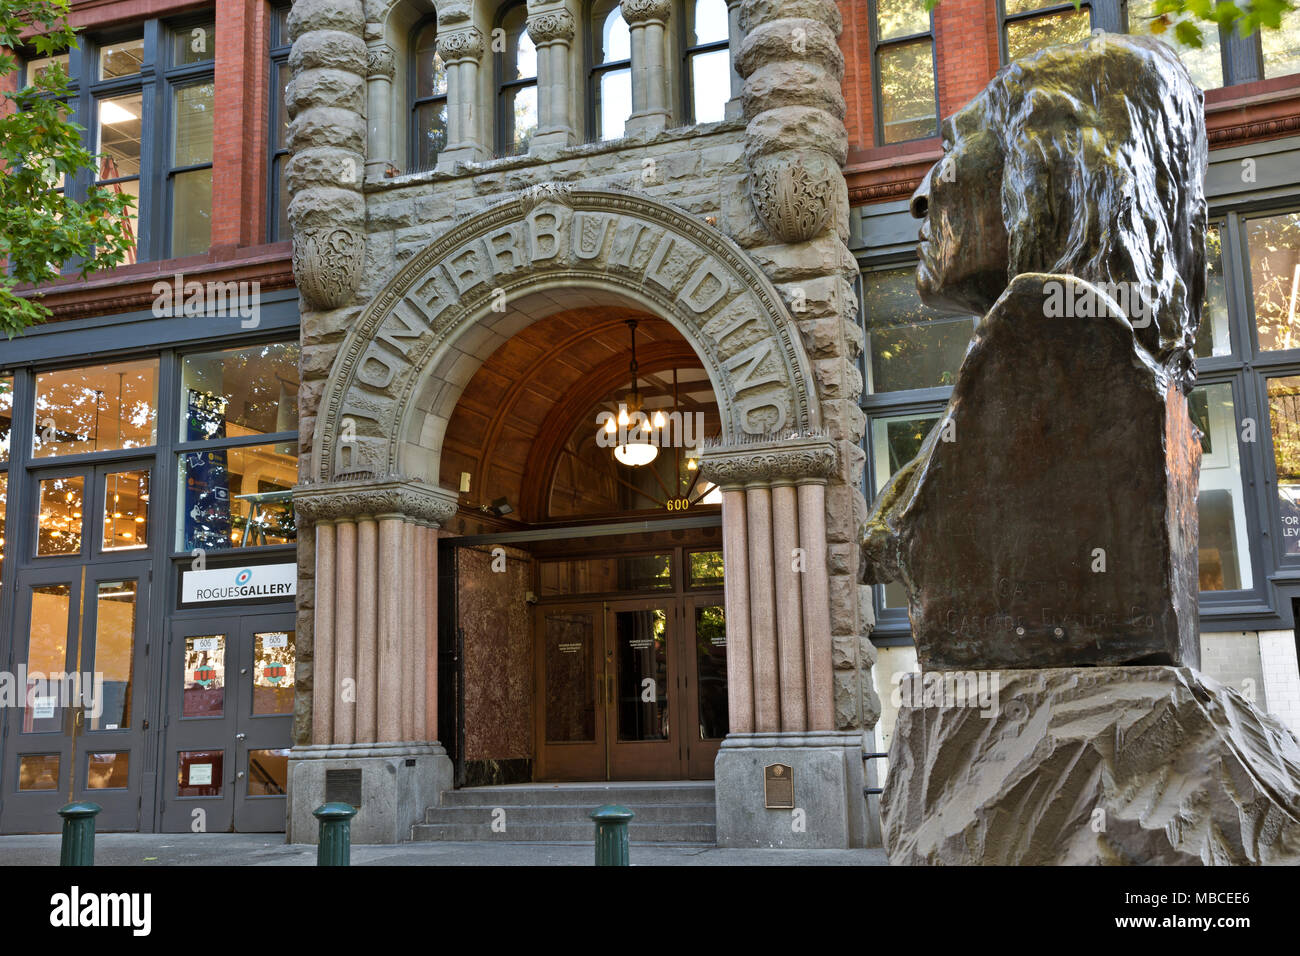 WA15087-00...WASHINGTON - un buste de chef Sealth, chef de l'Duwamish et Suquamish, et le pionnier des capacités dans Seattle's Pioneer Square. Banque D'Images